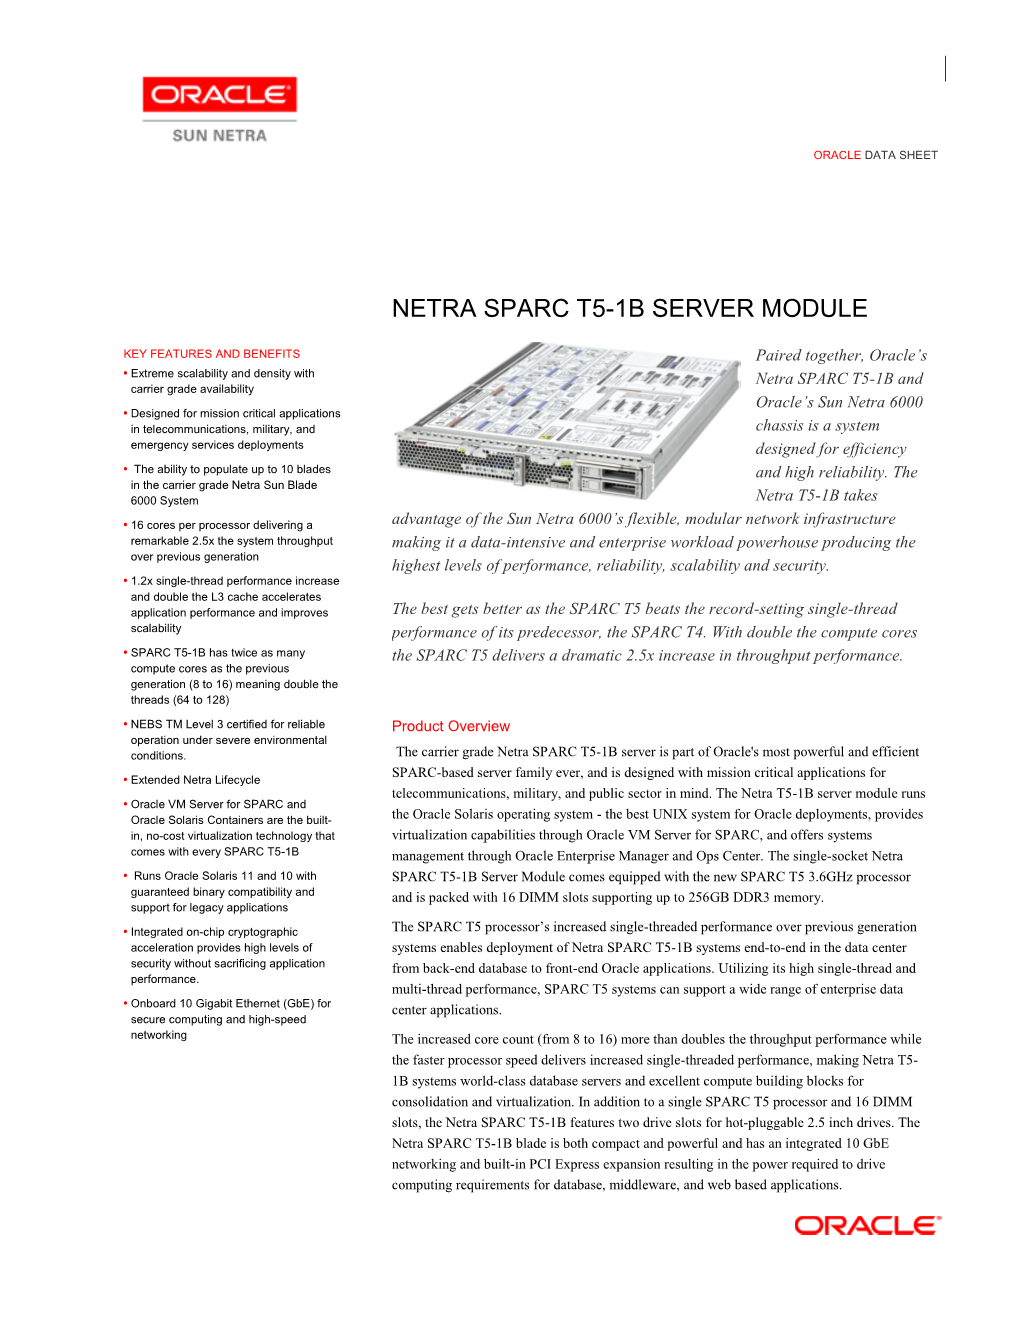 Netra SPARC T5-1B Server Module Data Sheet